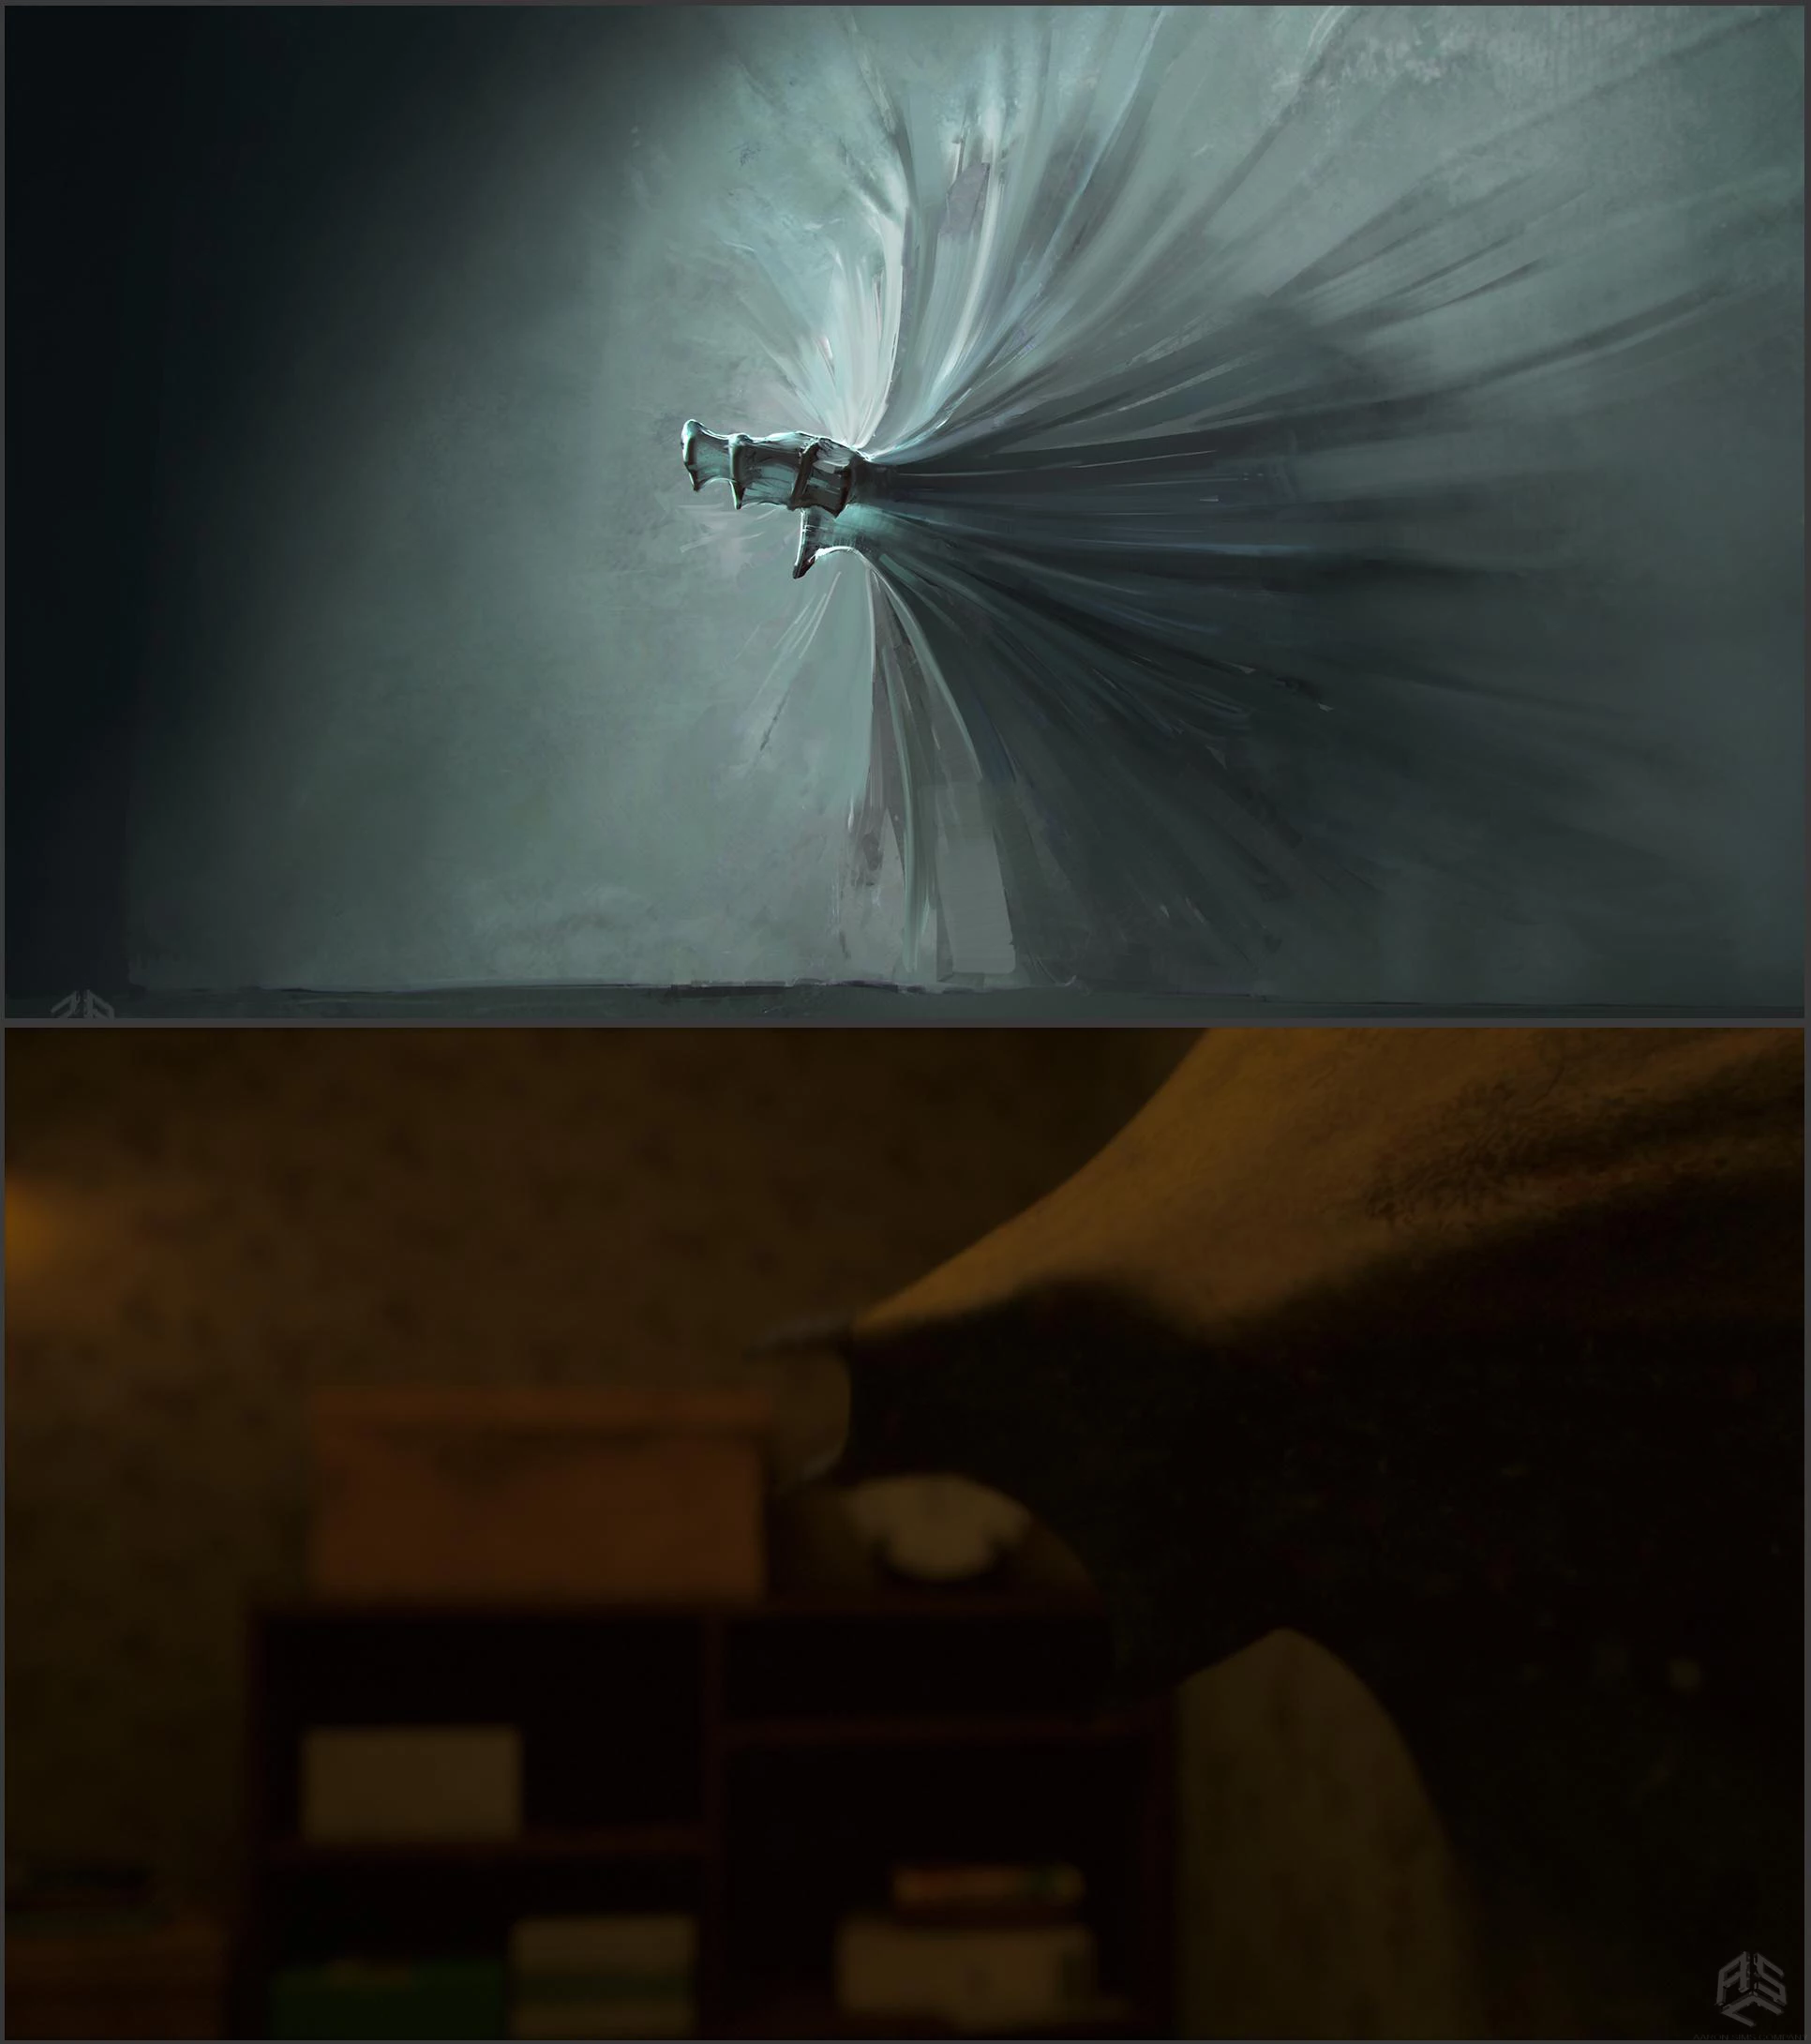 Stranger Things' Concept Artist Talks Demogorgon Egg, Barb